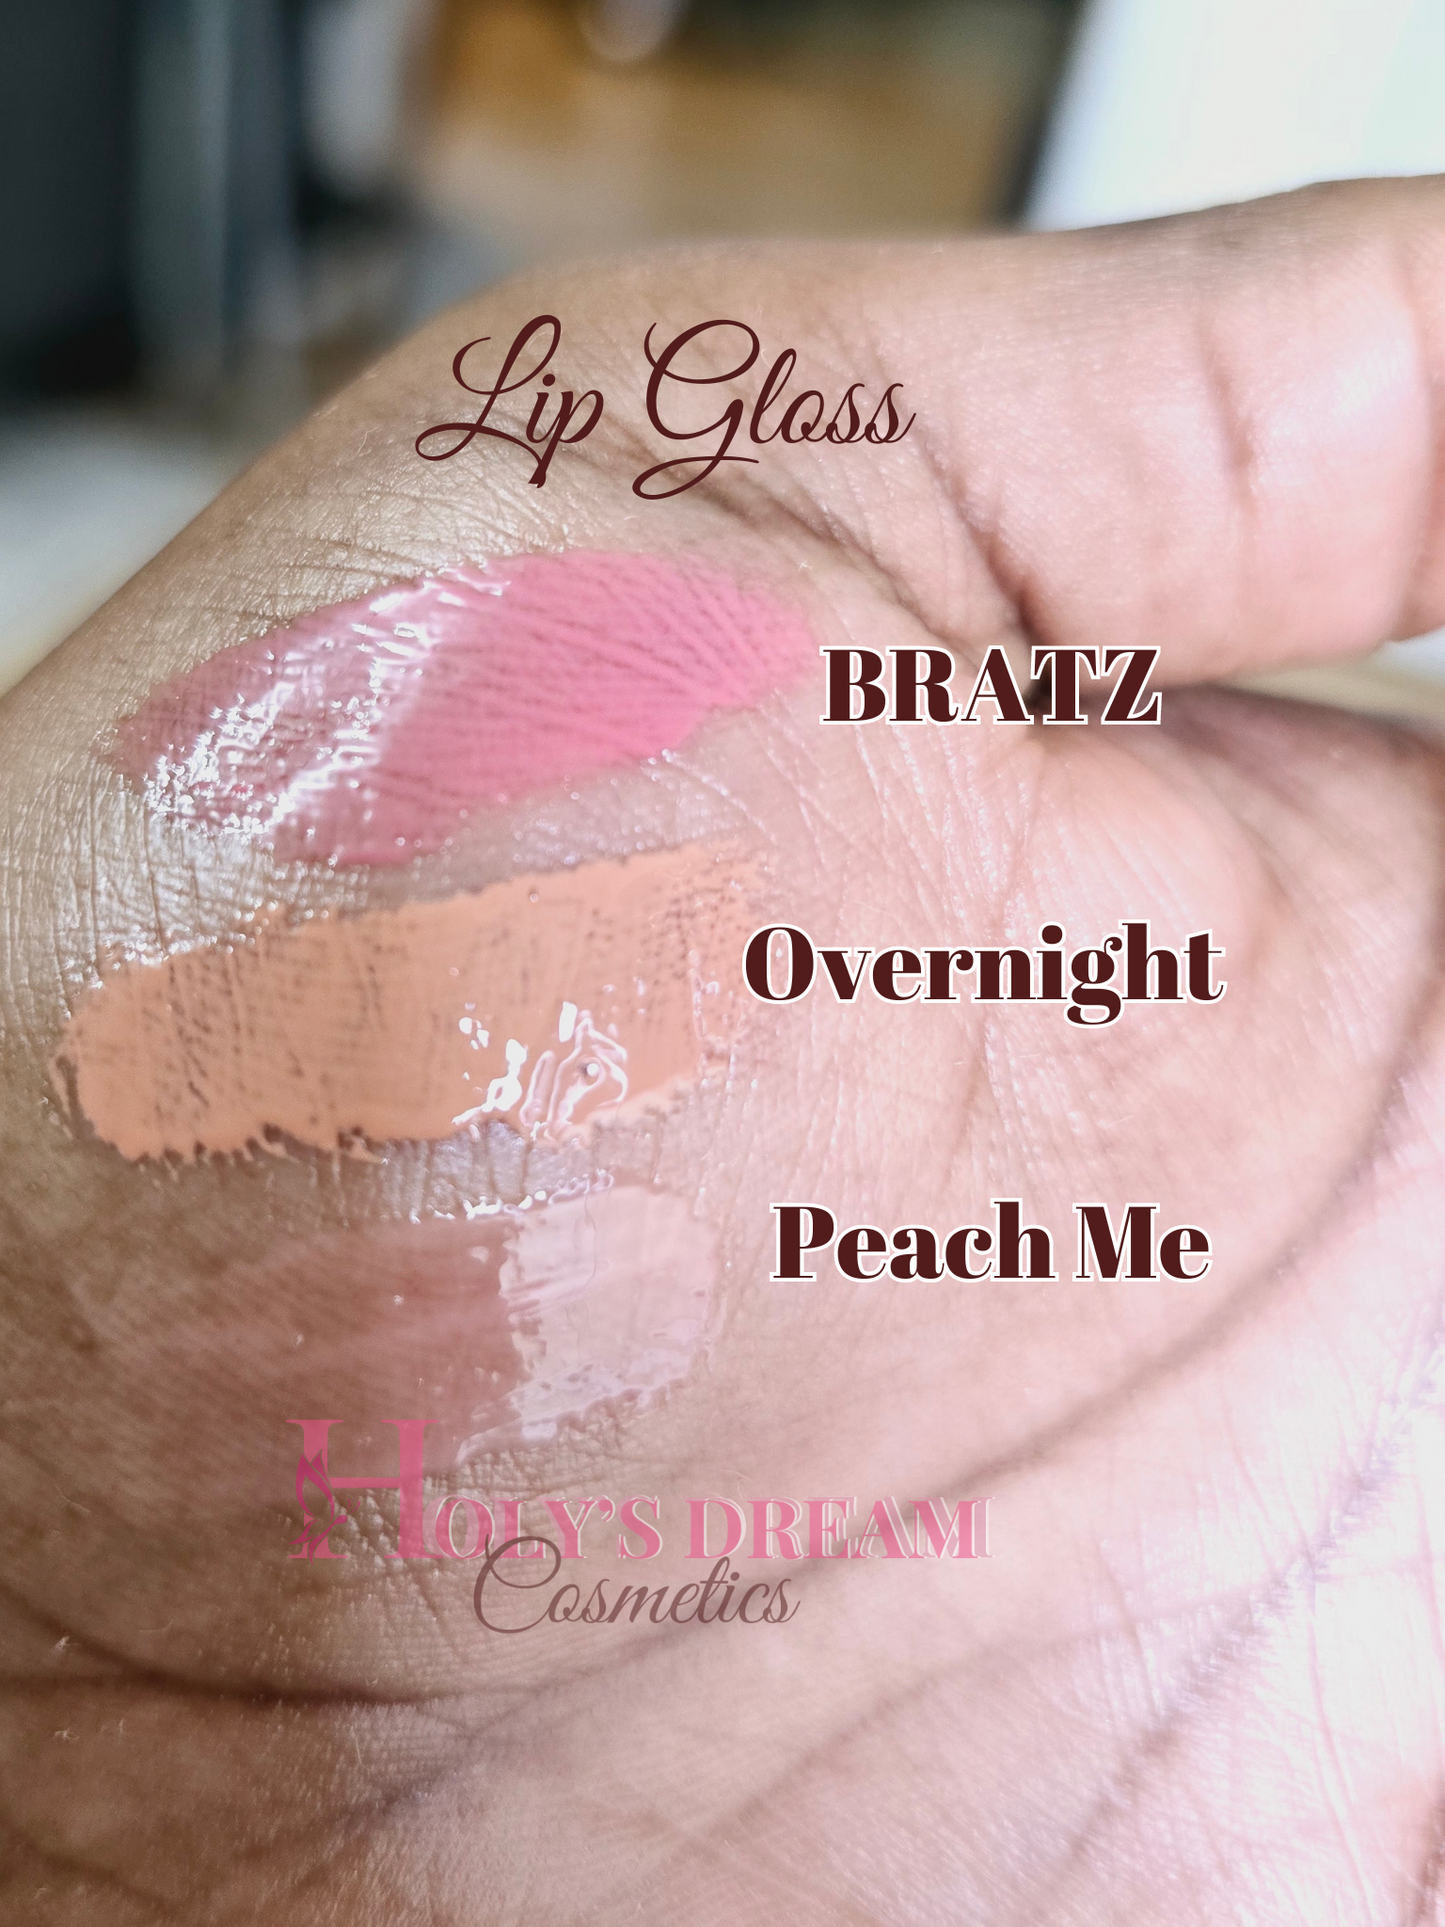 Peach me lip gloss